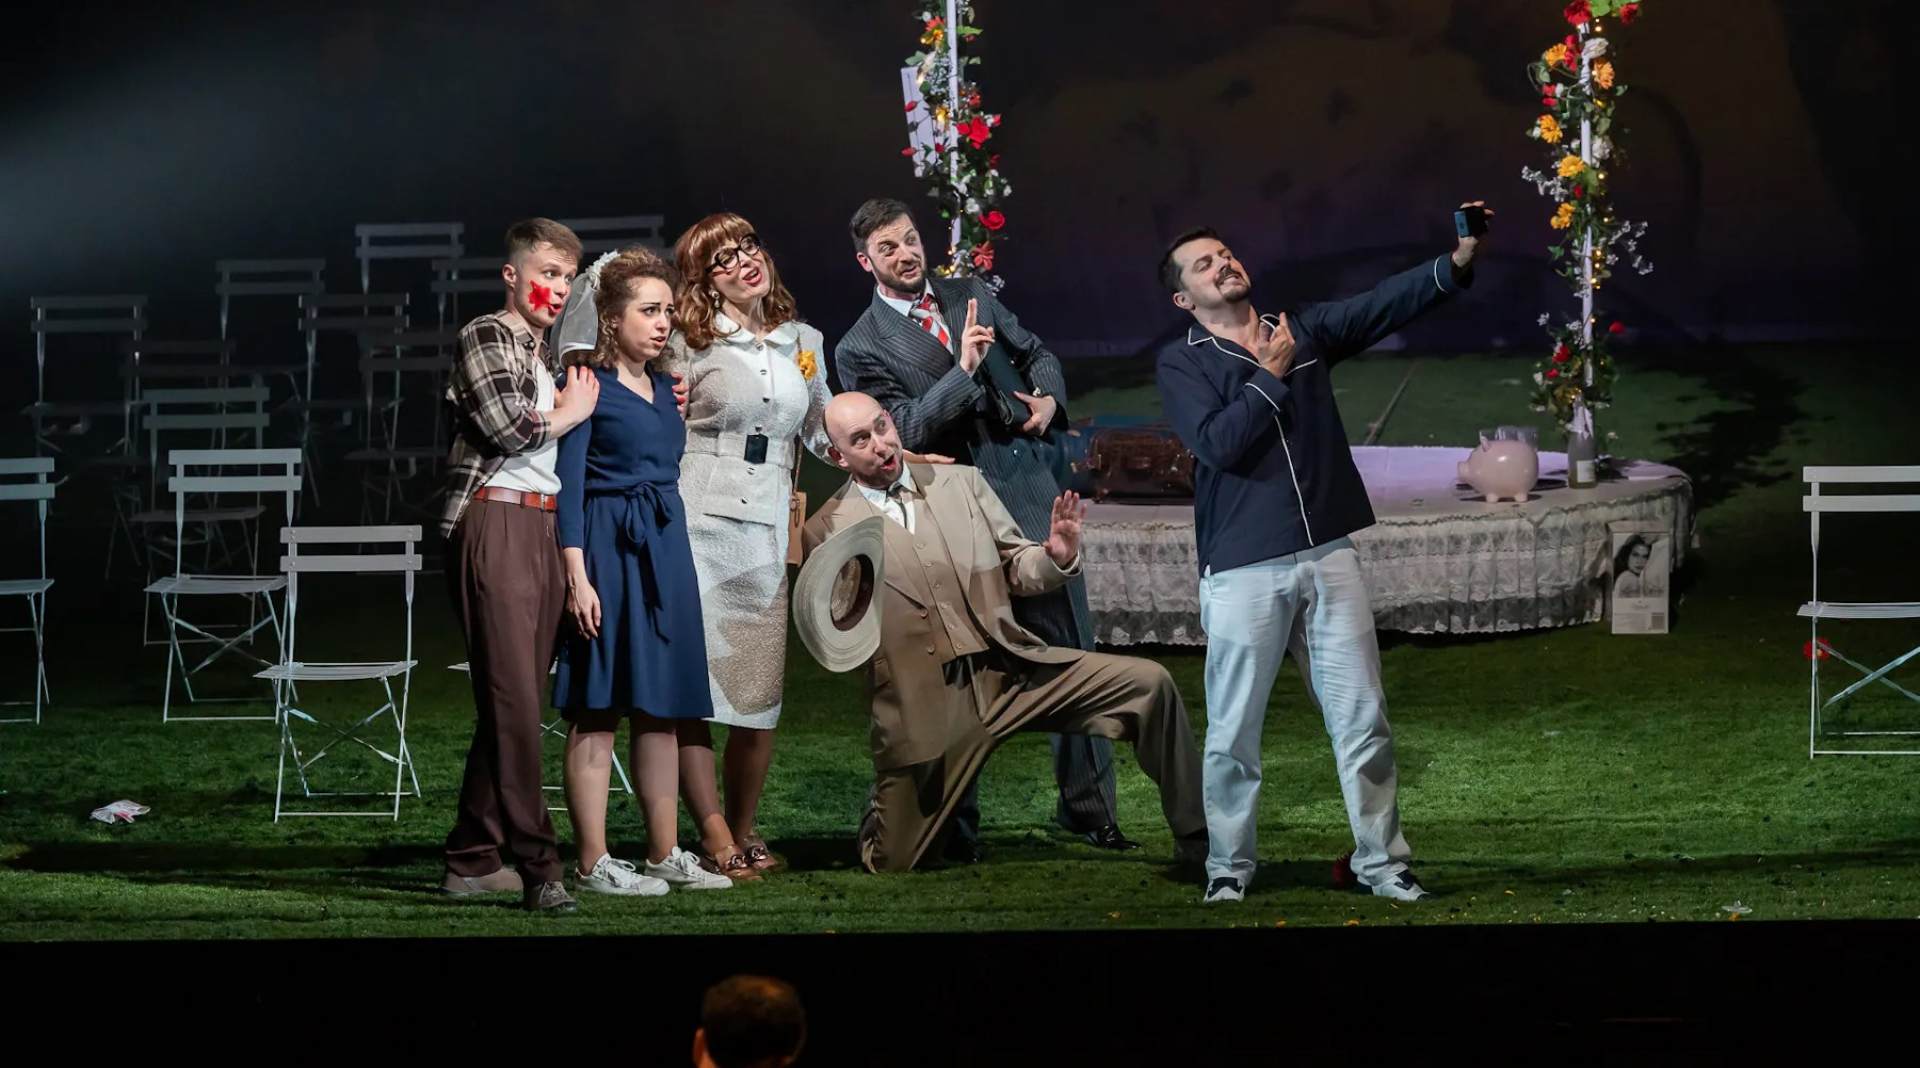 Le nozze di Figaro - Teatro degli Stati di Praga